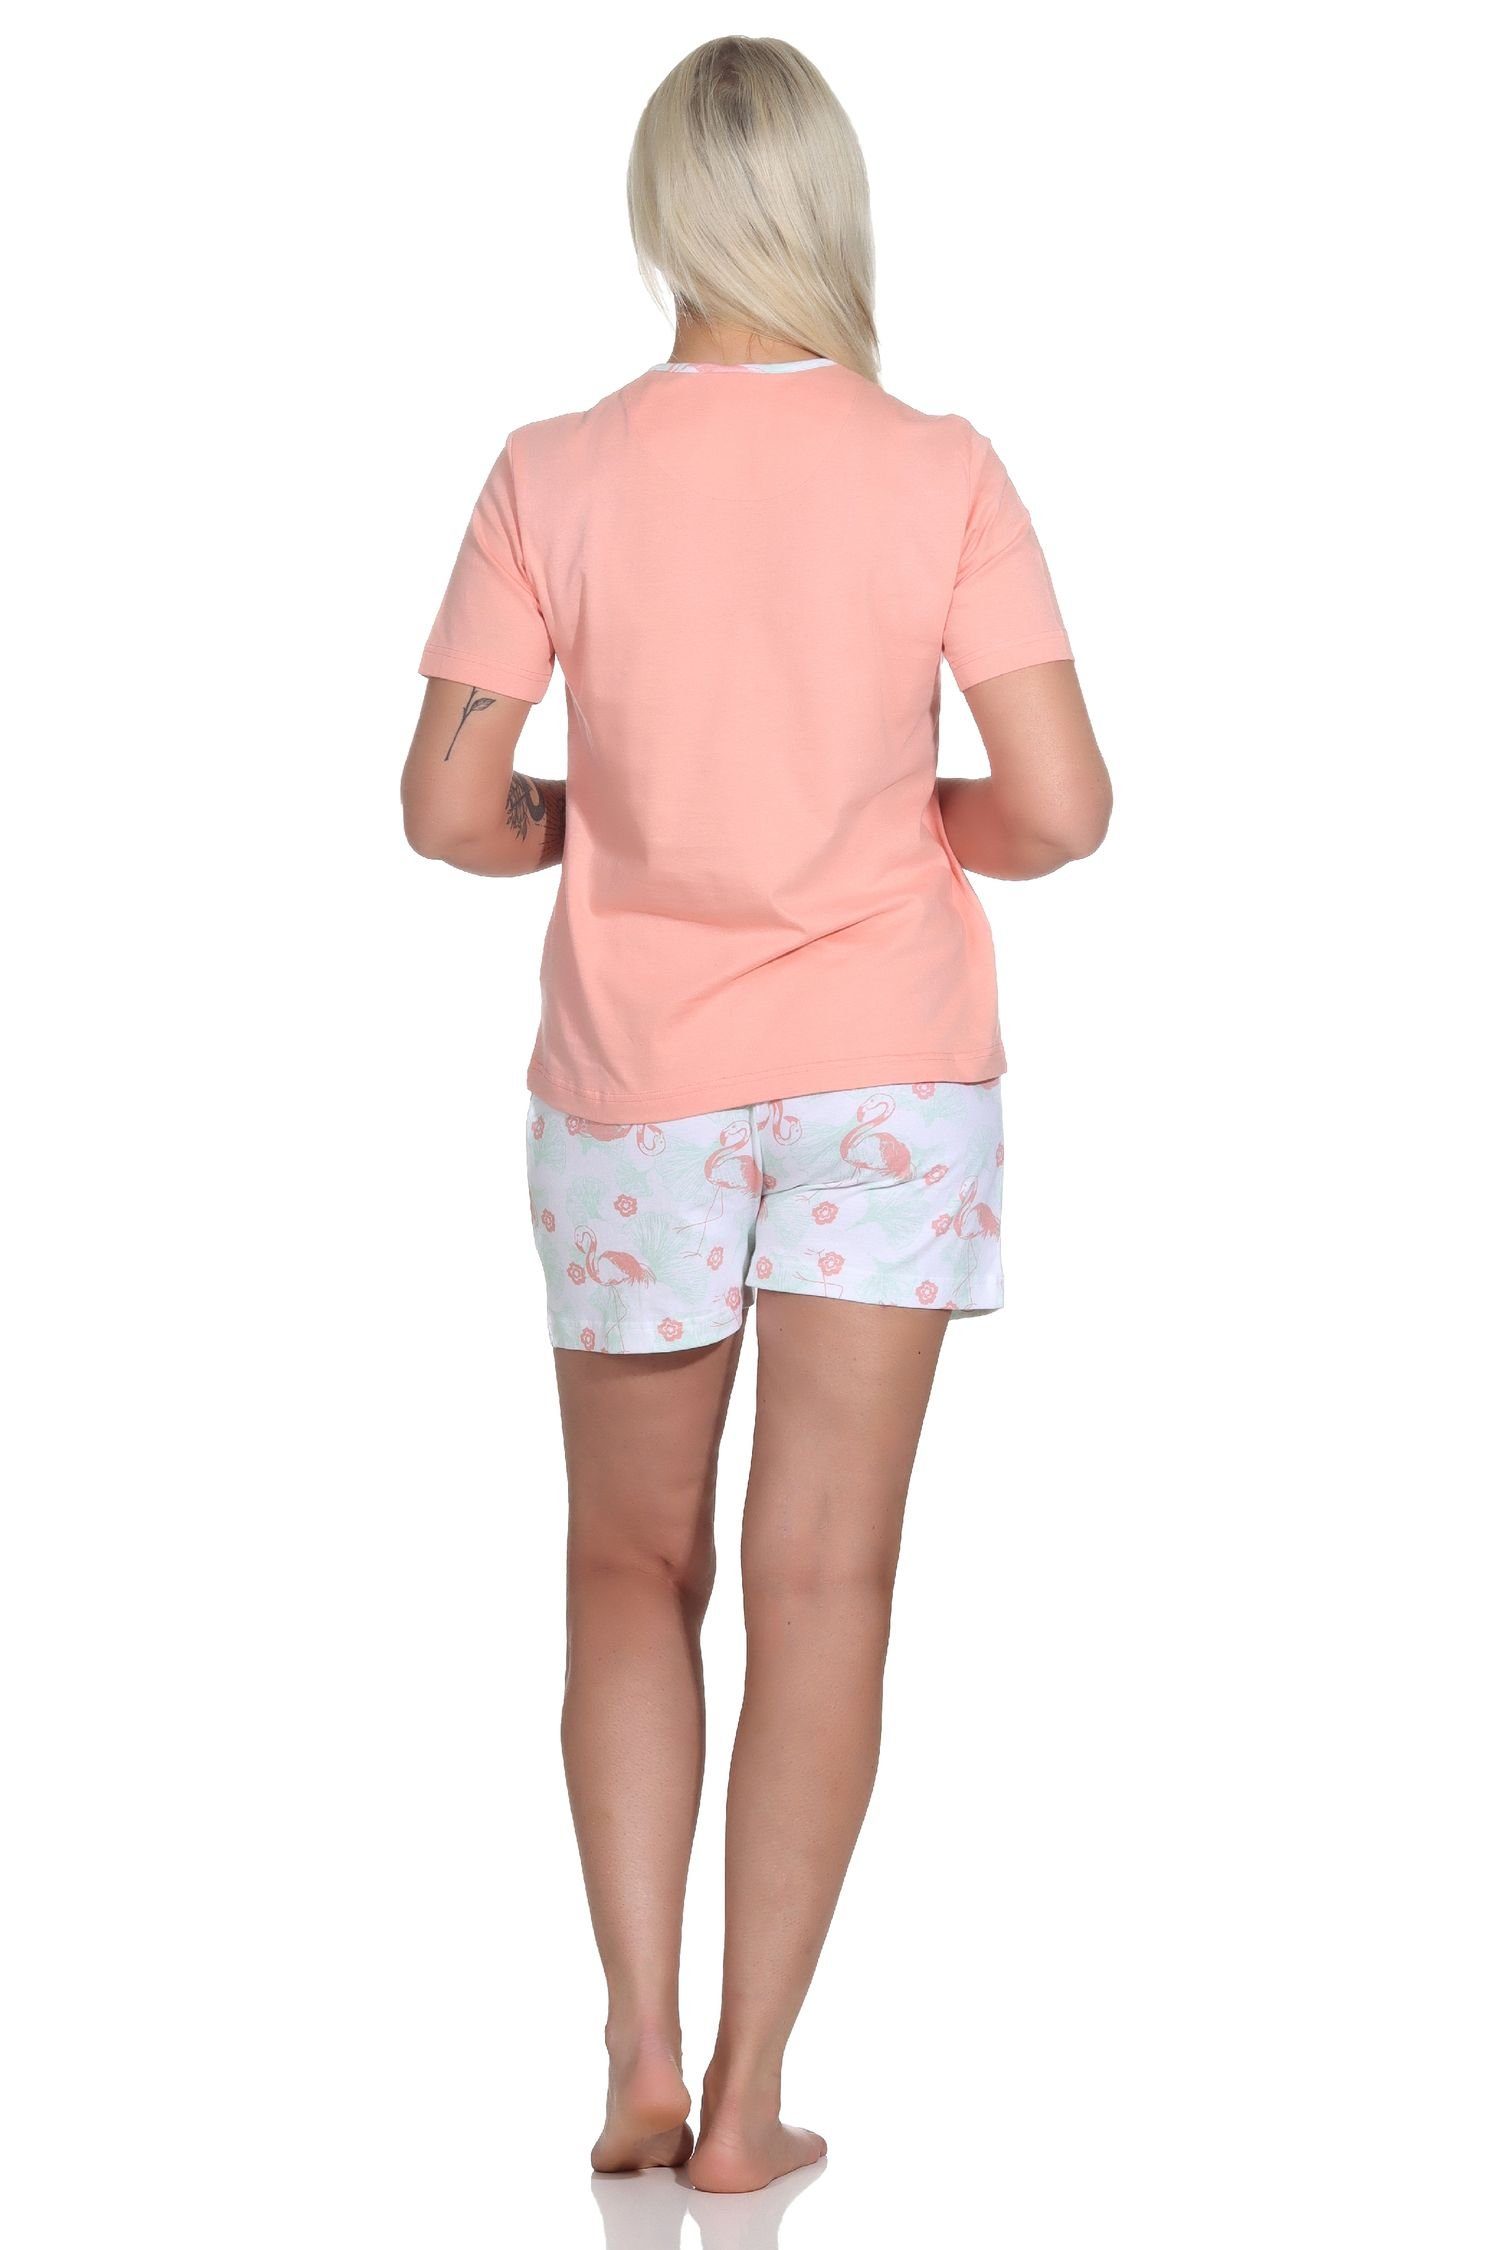 mit Pyjama Normann Damen apricot Shorty Flamingo Pyjama Schlafanzug Motiv kurzarm